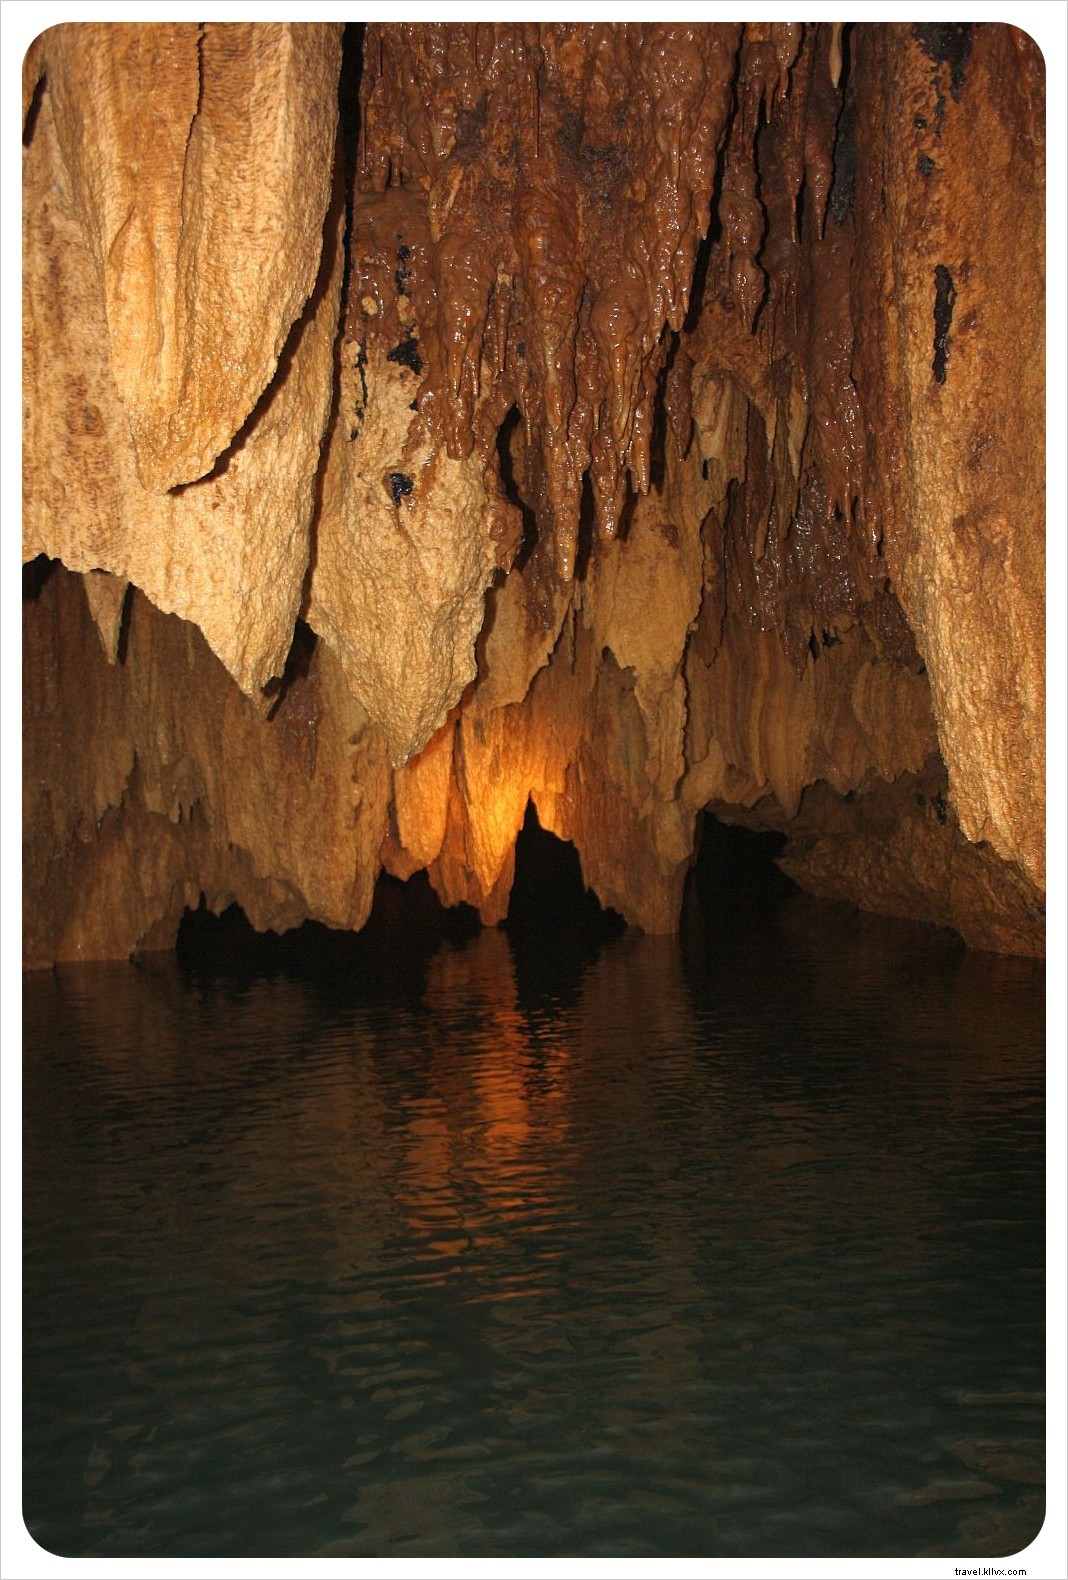 La grotte ATM du Belize :le jour où nous sommes devenus des explorateurs de grottes